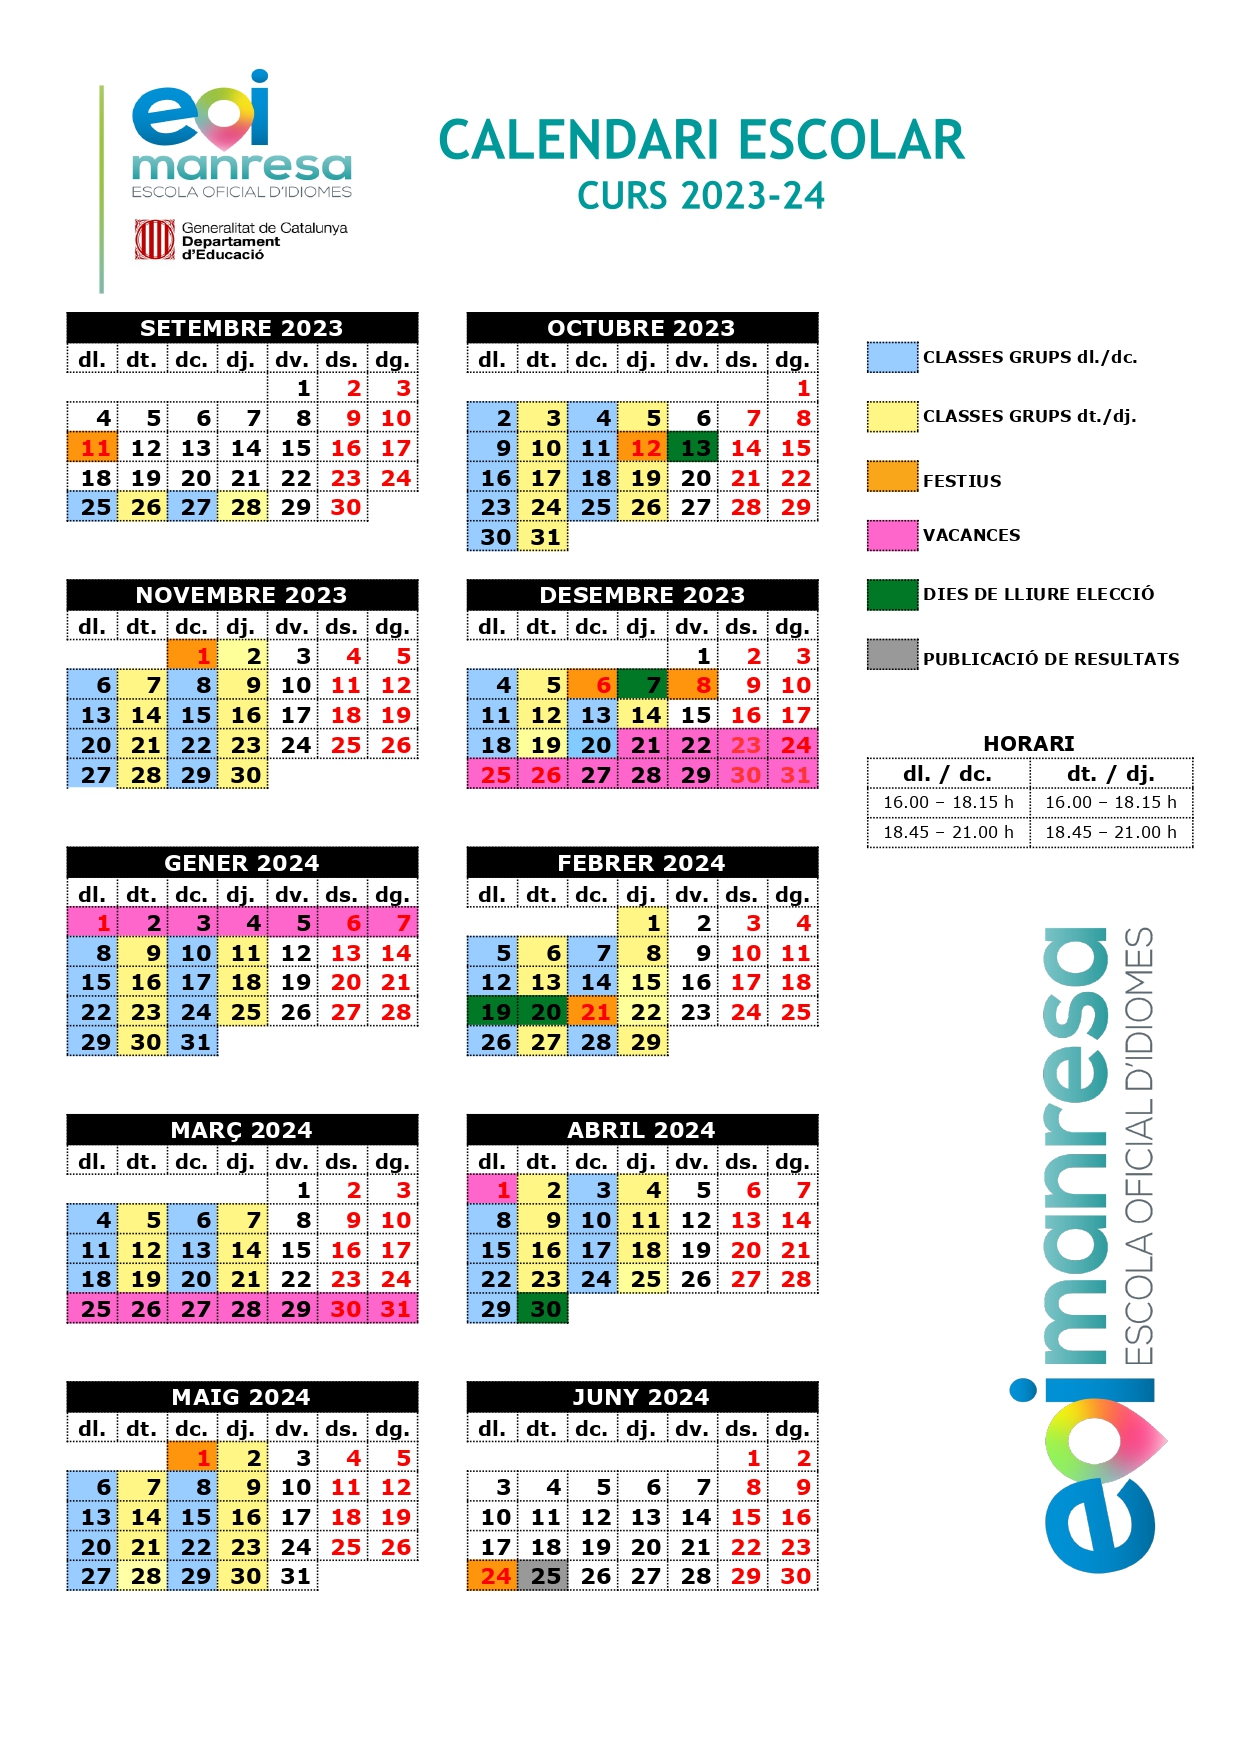 Calendari escolar 2023-24 EOI Manresa